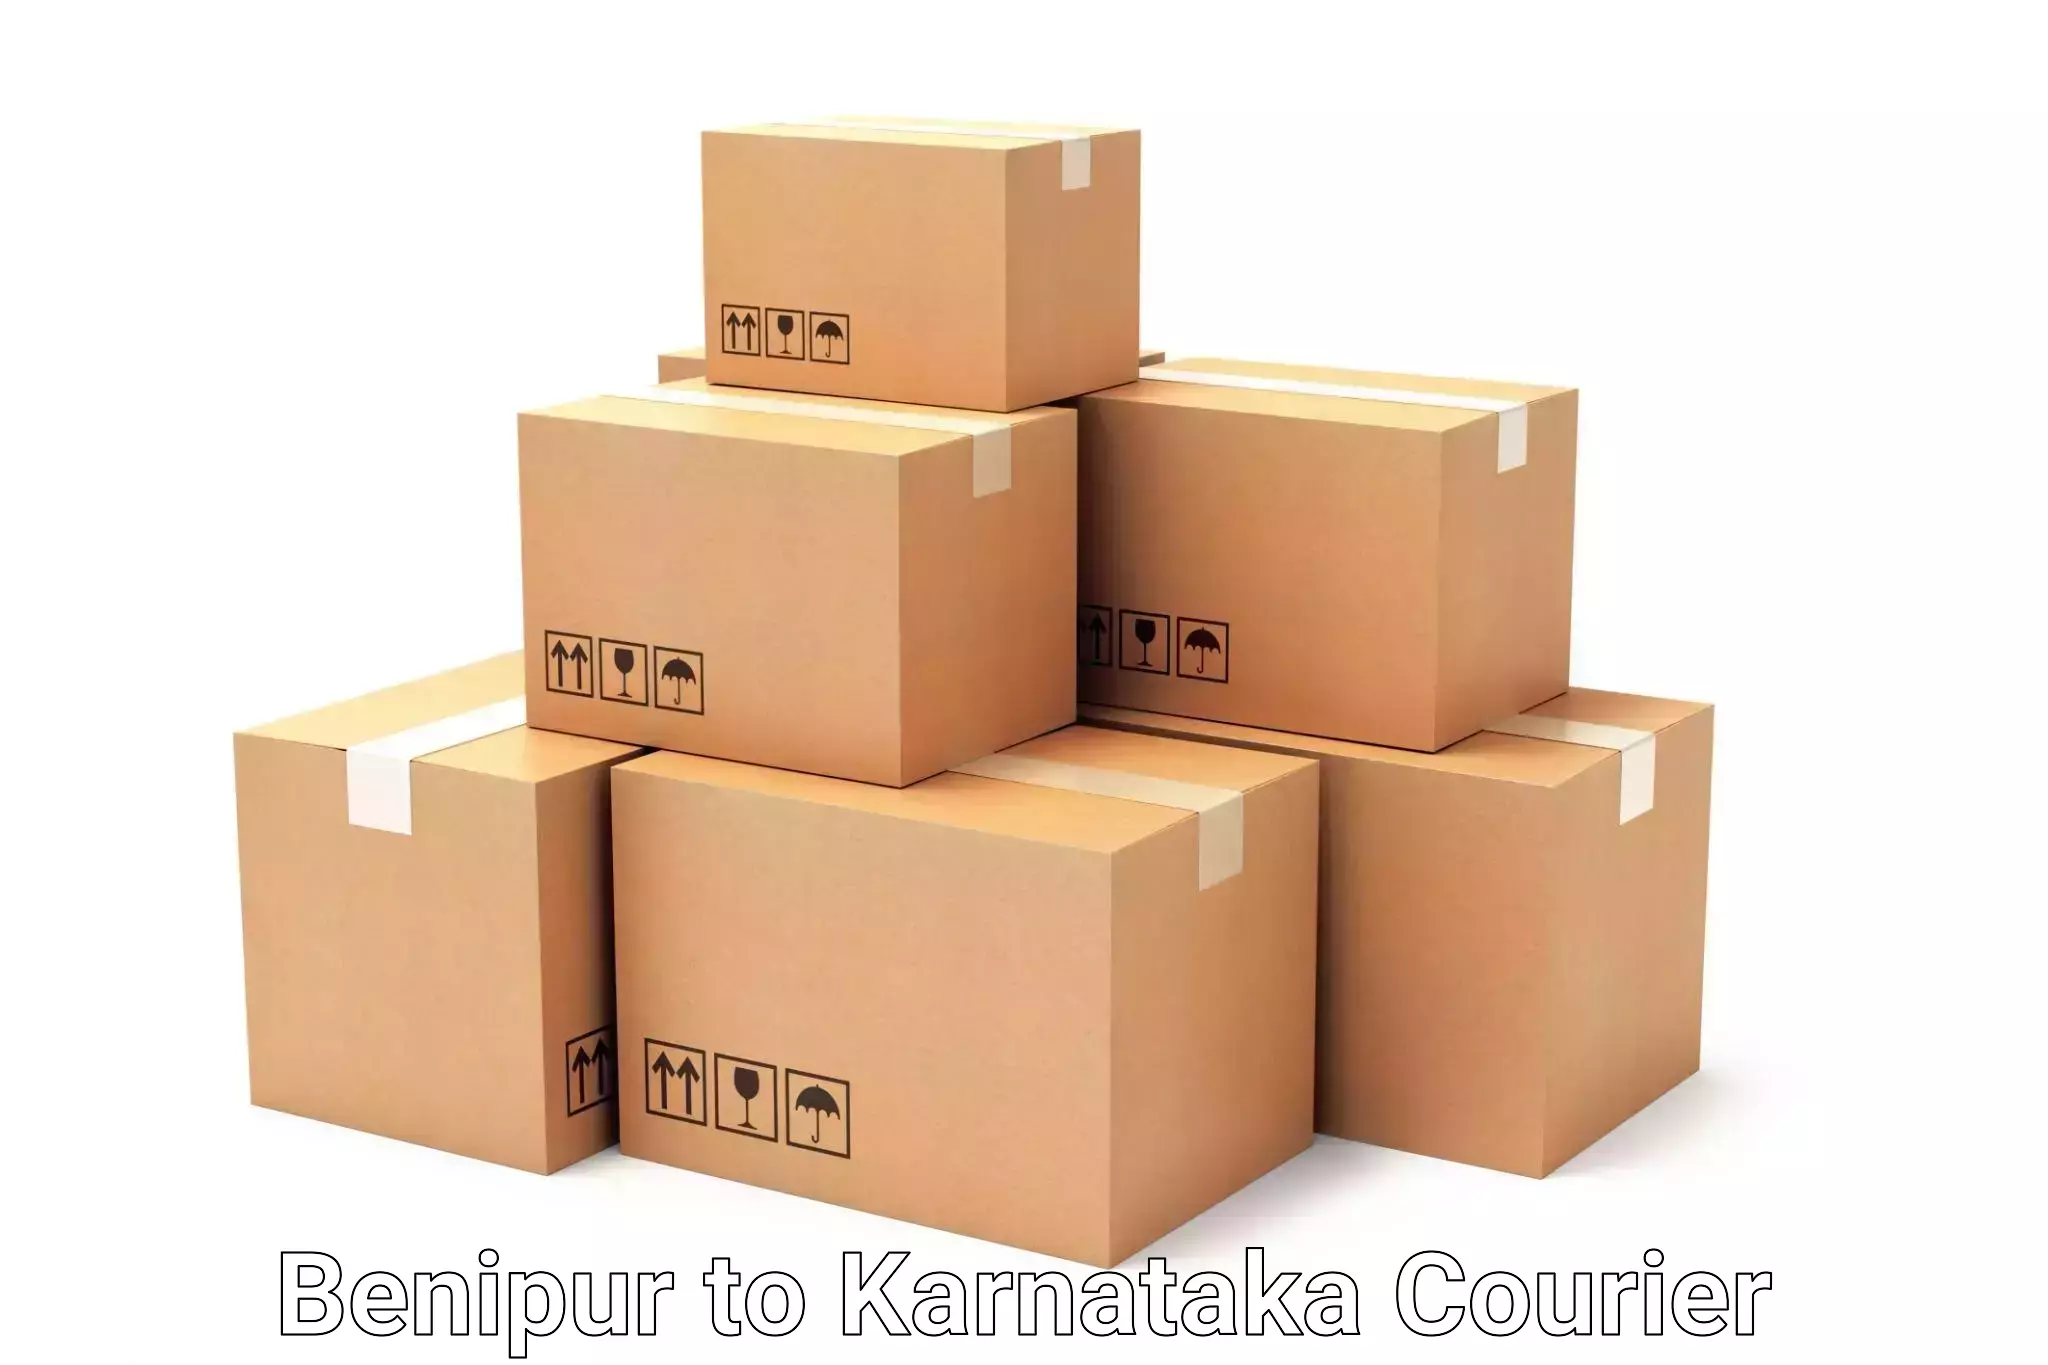 Corporate baggage transport Benipur to Kanjarakatte